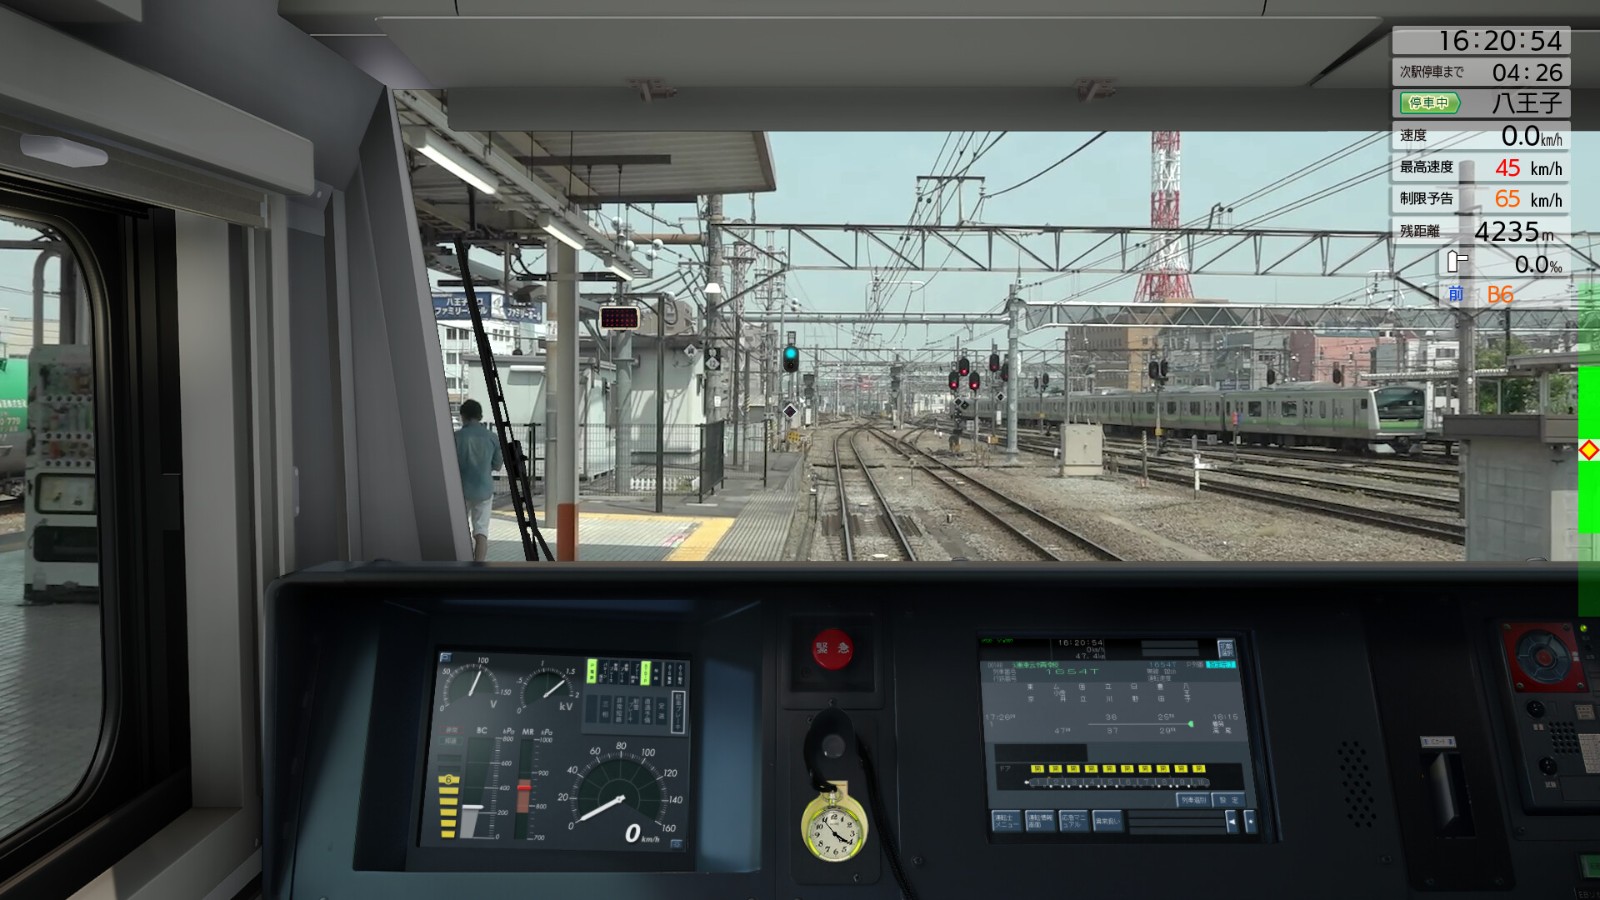 《JR东日本列车模拟器》新DLC上线 更详尽新路线启动